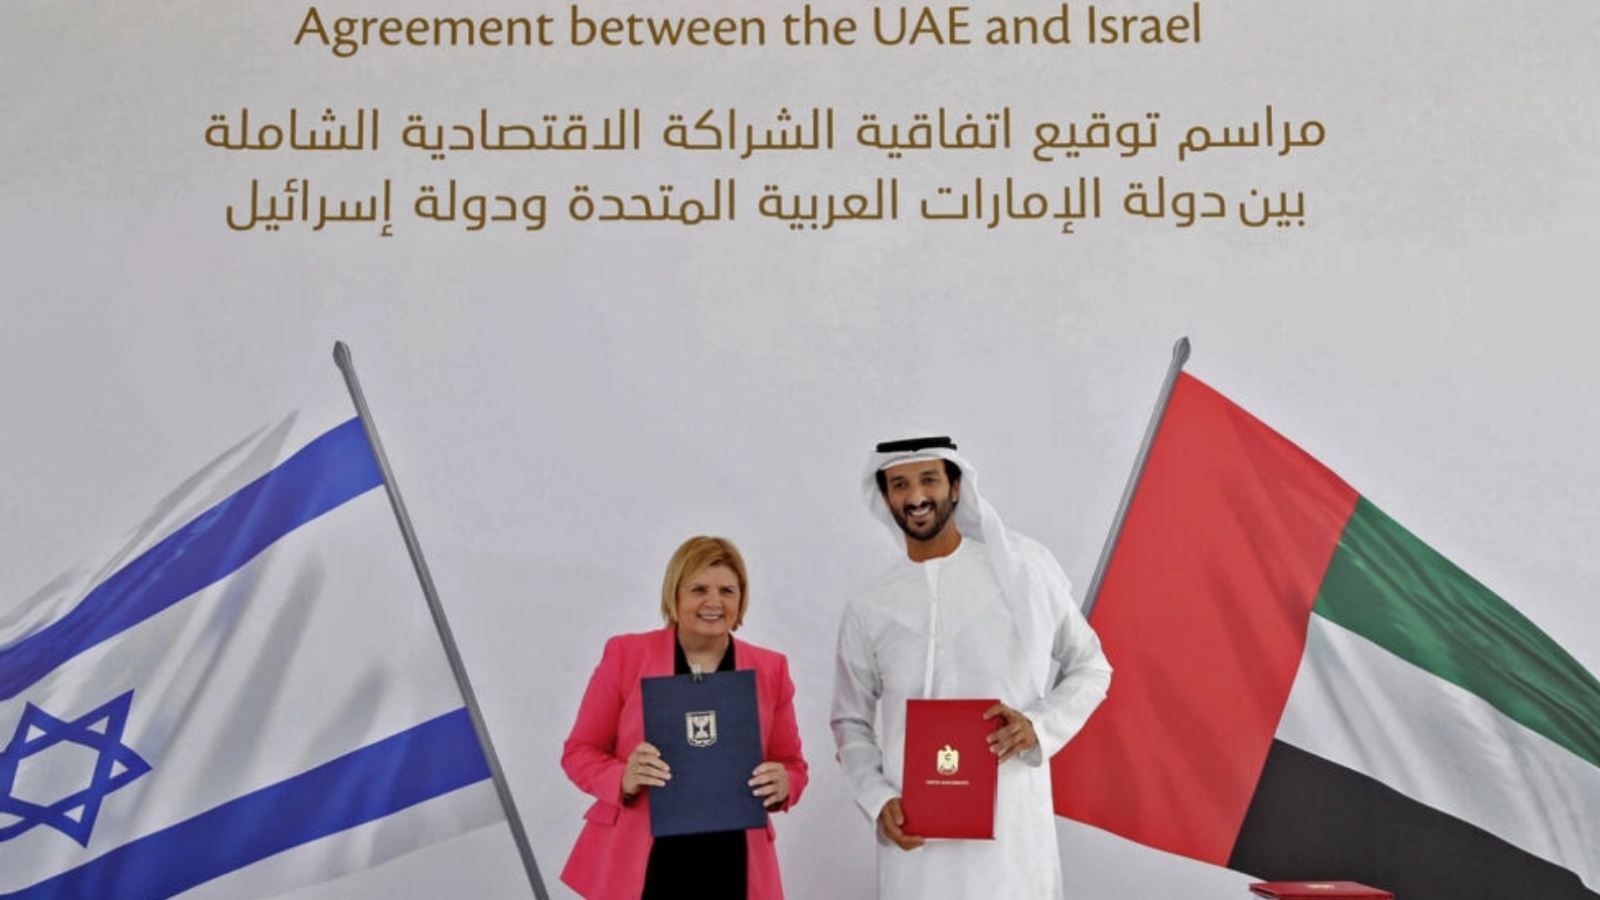 وزيرة الاقتصاد والصناعة الإسرائيلية أورنا باربيفاي ووزير الاقتصاد الإماراتي عبد الله بن طوق المري خلال توقيع اتفاق التجارة الحرة 